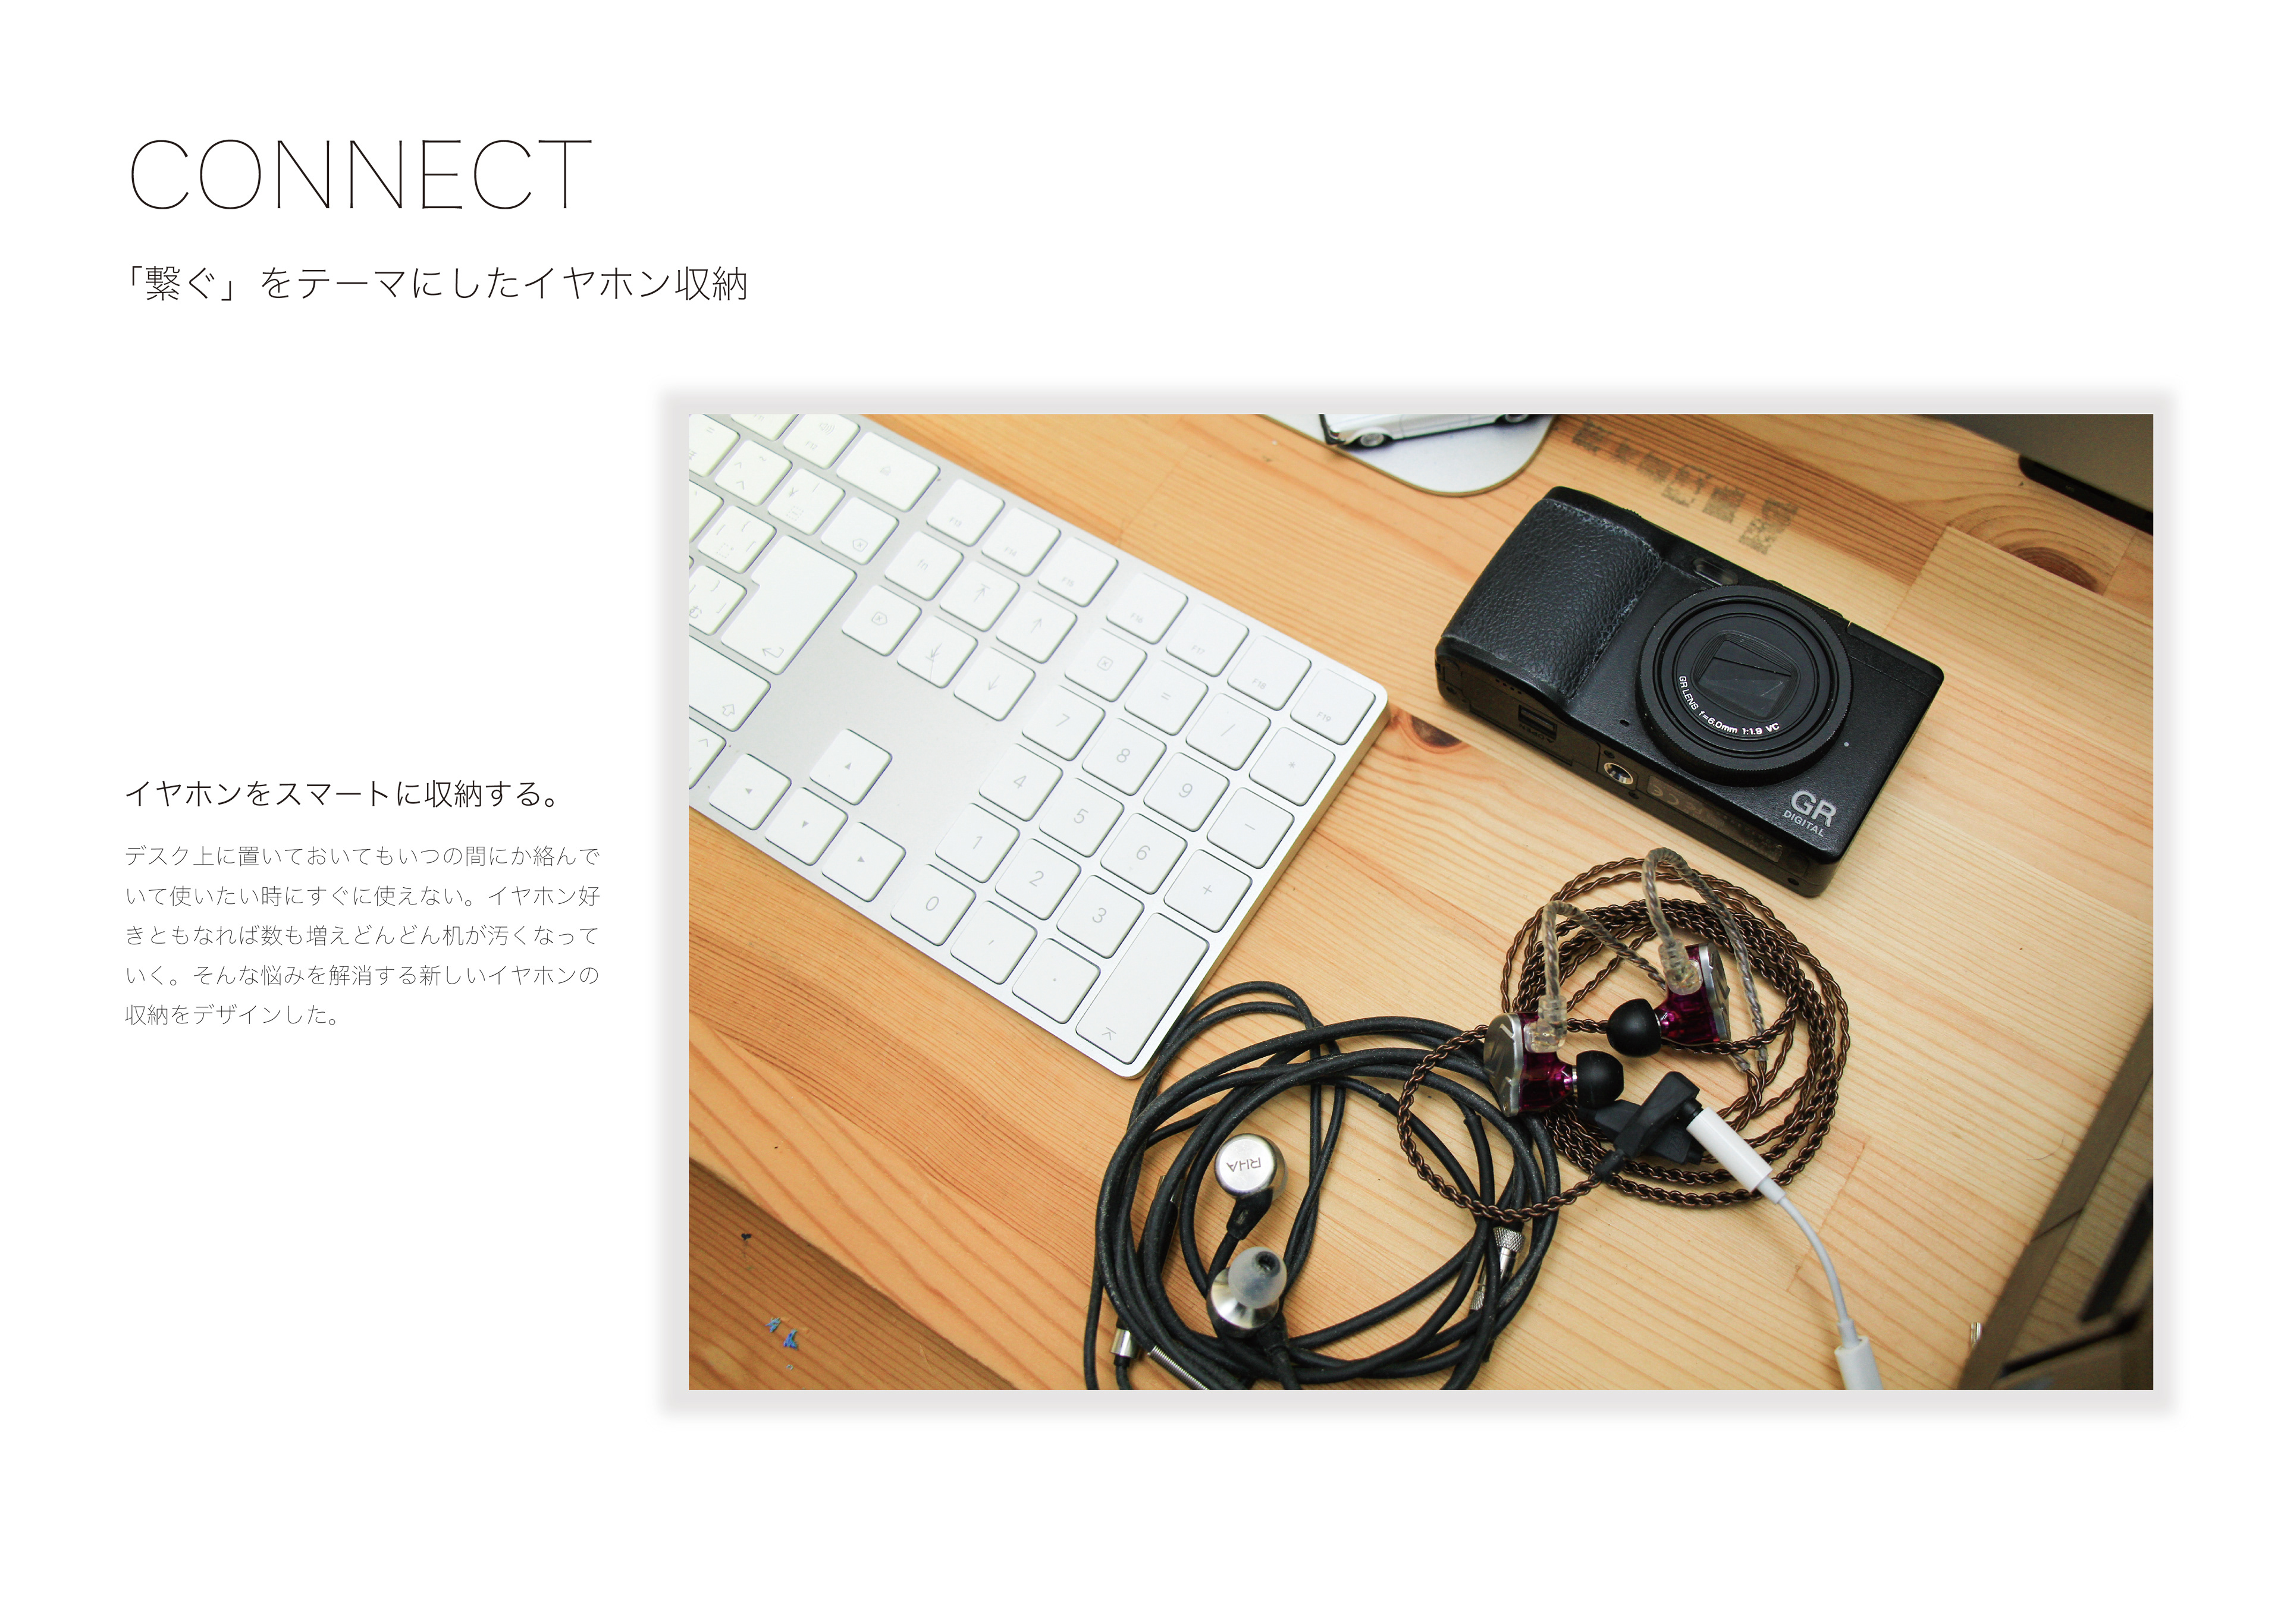 Matsuoka Design Works 繋ぐ をテーマにしたイヤホン収納 Connect